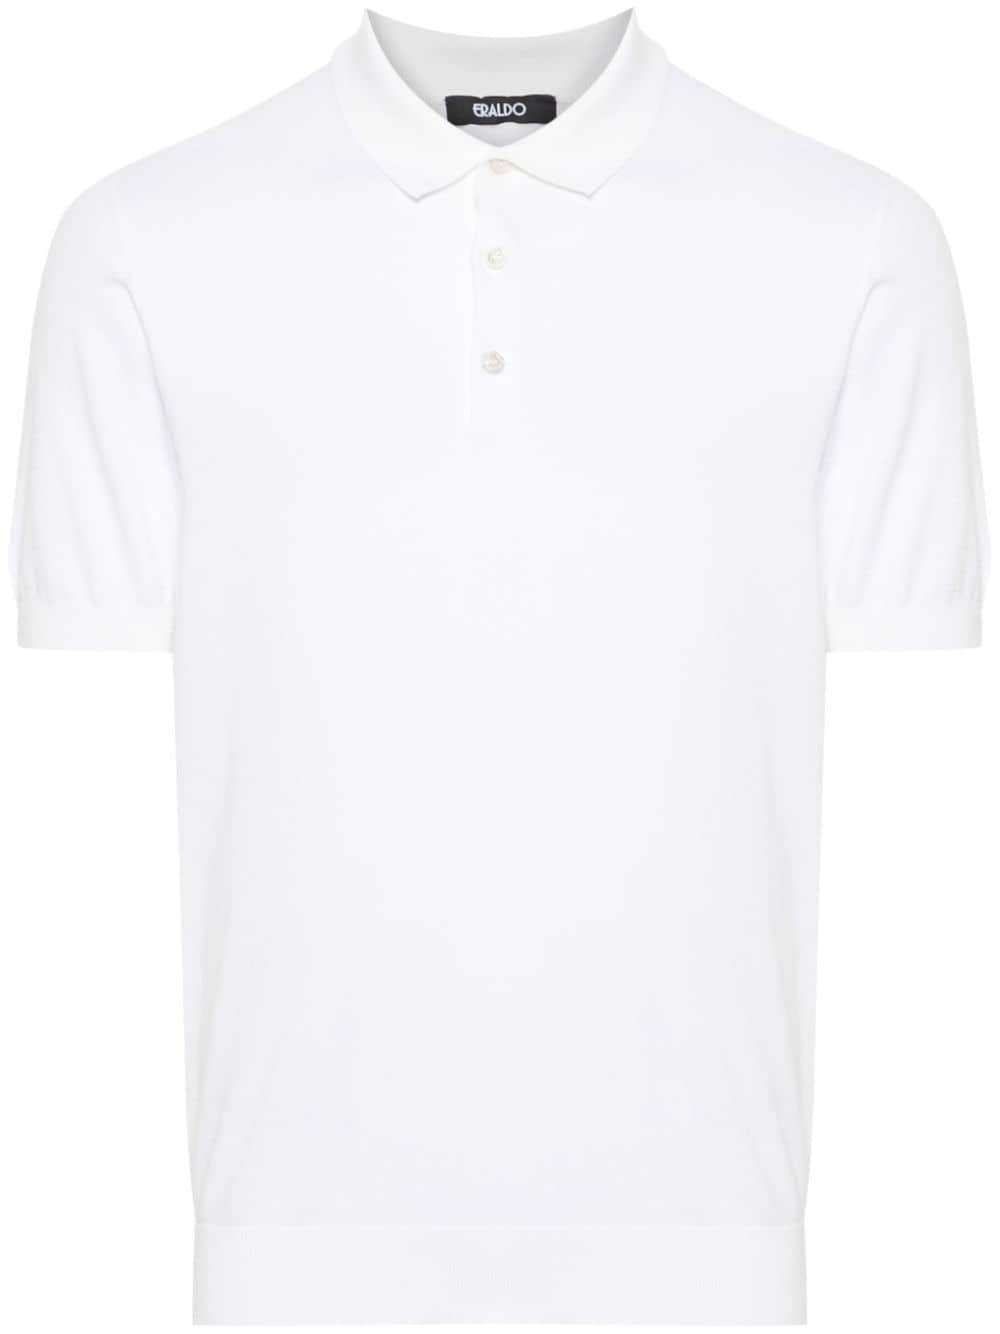 ERALDO knitted cotton polo shirt - White von ERALDO